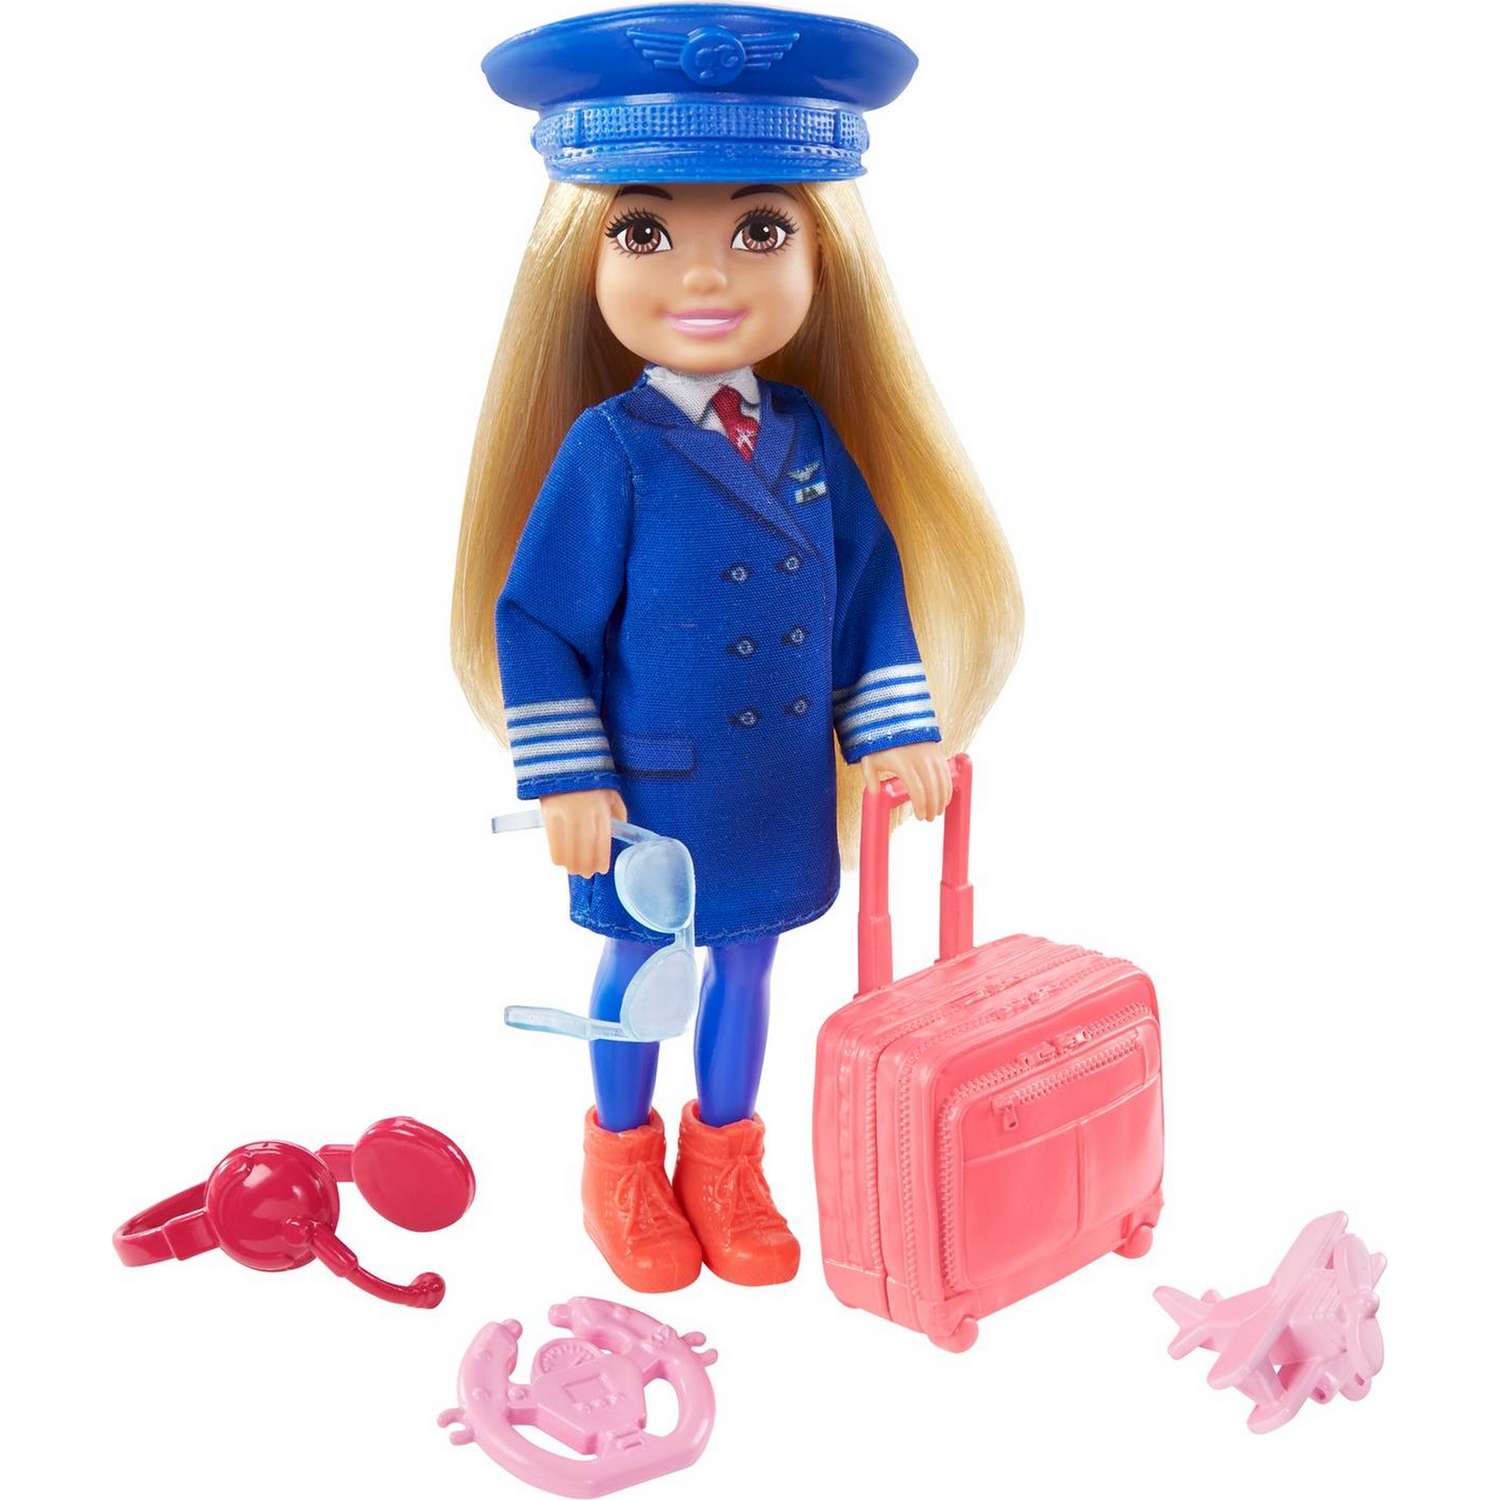 Набор Barbie Карьера Челси кукла+аксессуары в ассортименте GTN86 GTN86 - фото 3